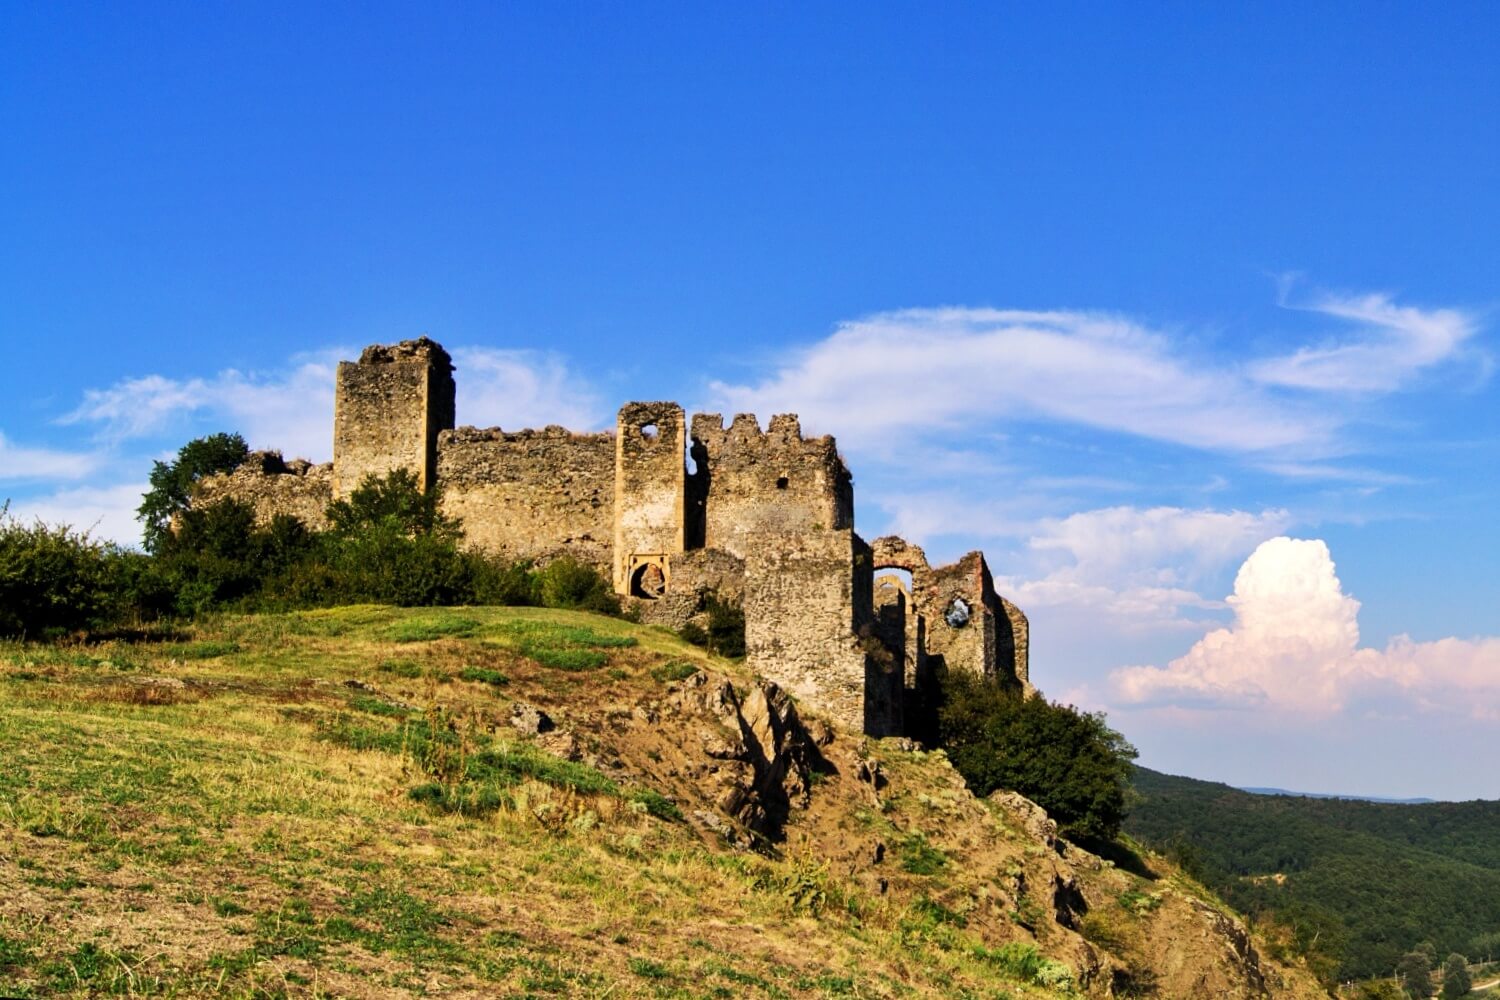 Şoimoş Citadel